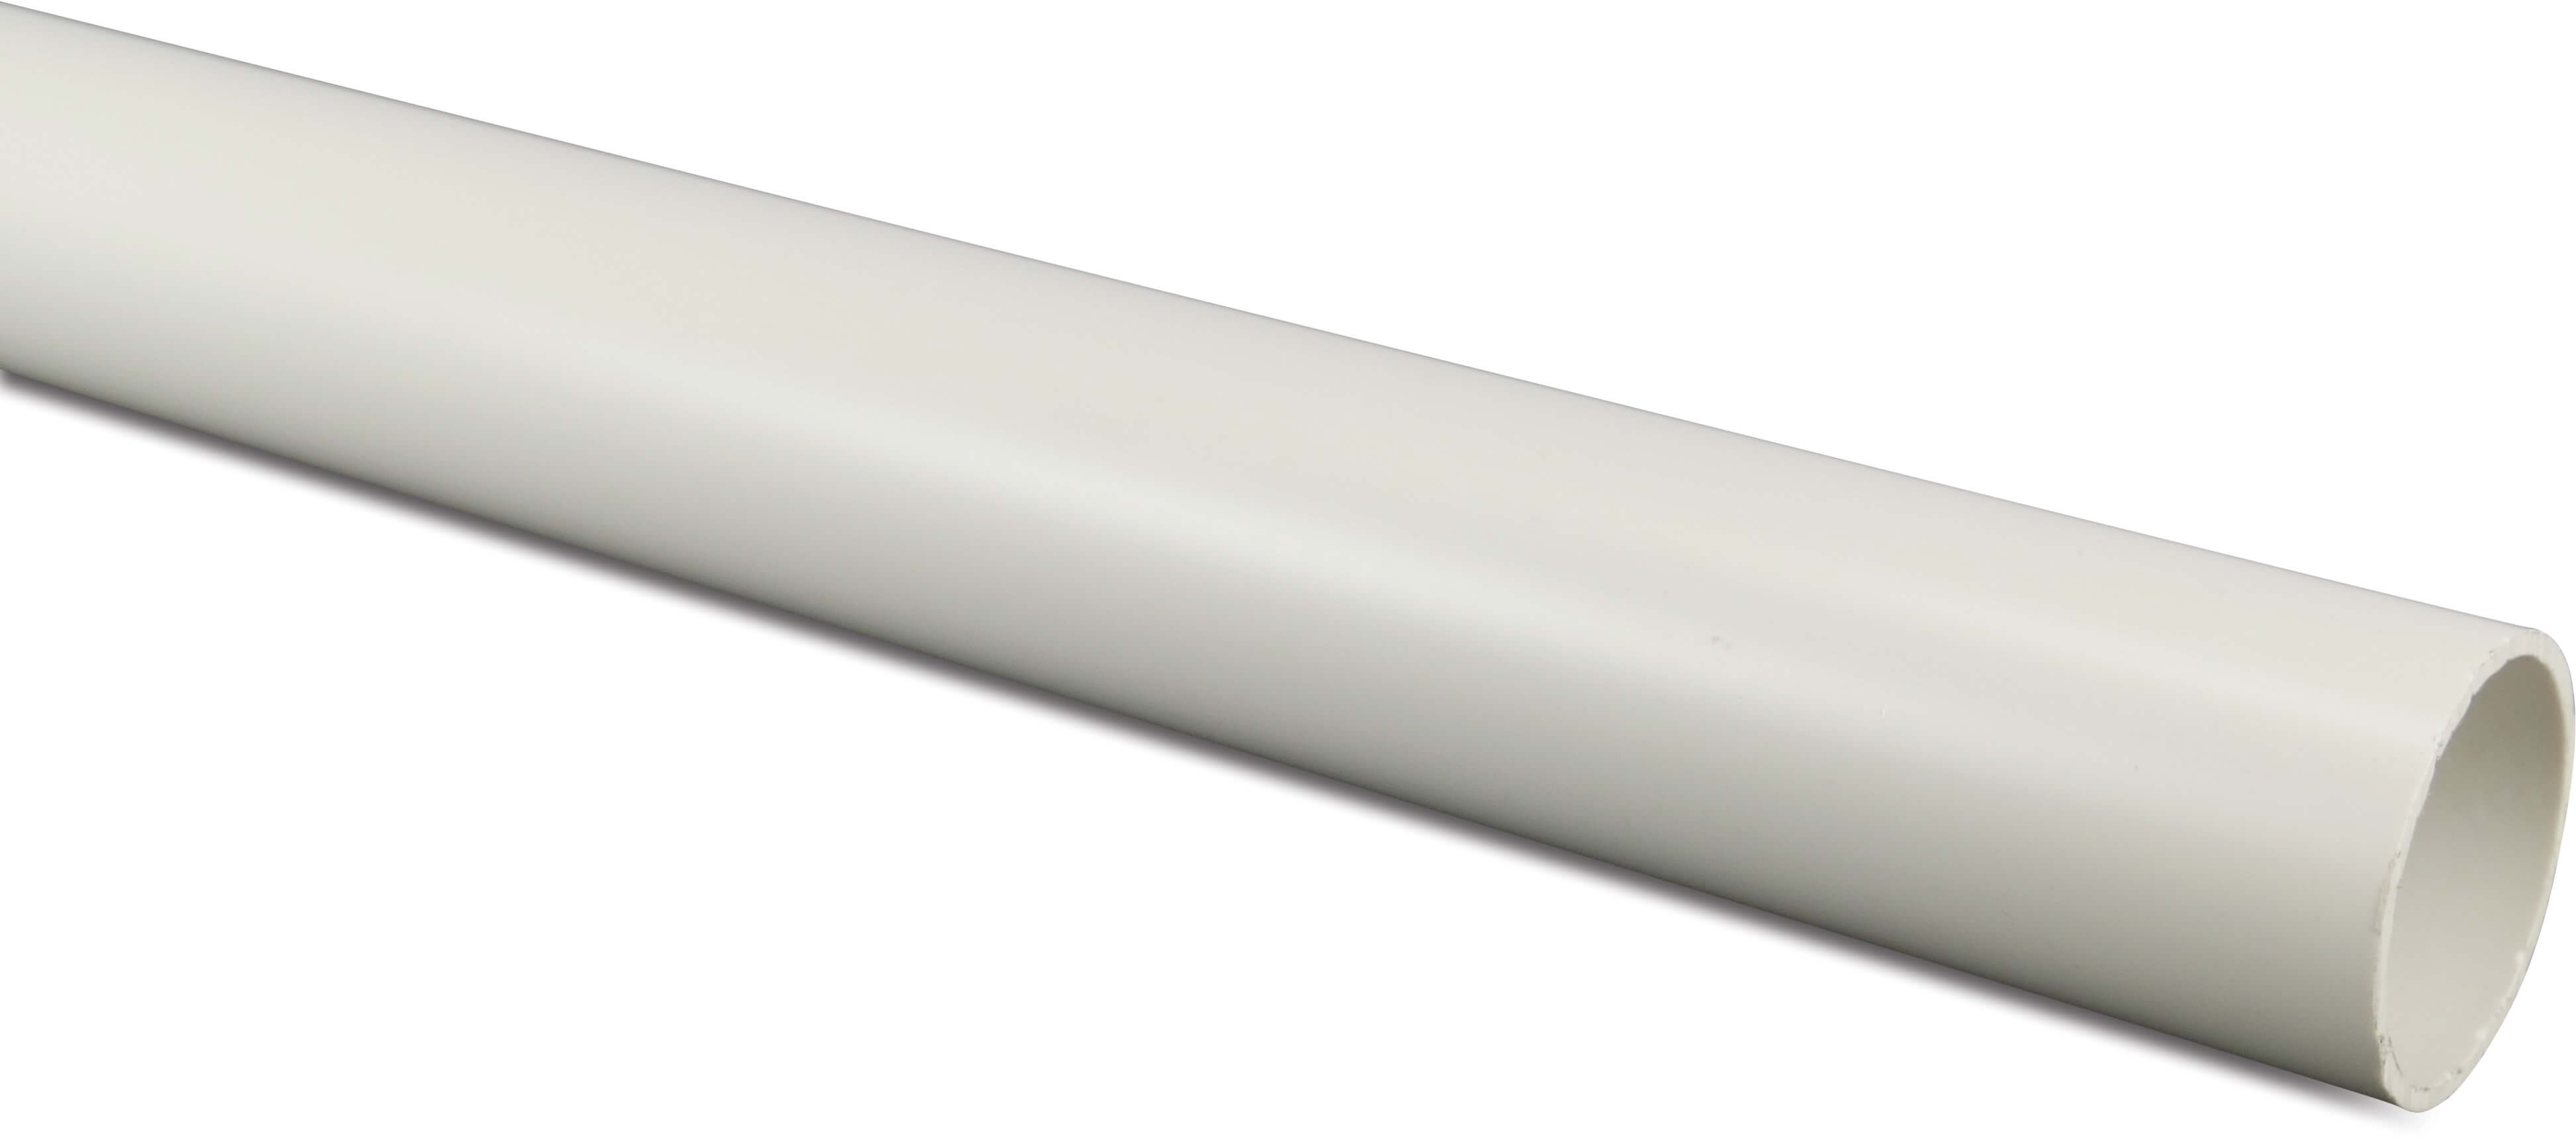 Pressure pipe PVC-U 1 1/2" x 2,5 mm plain Class D-PN12 white 2m